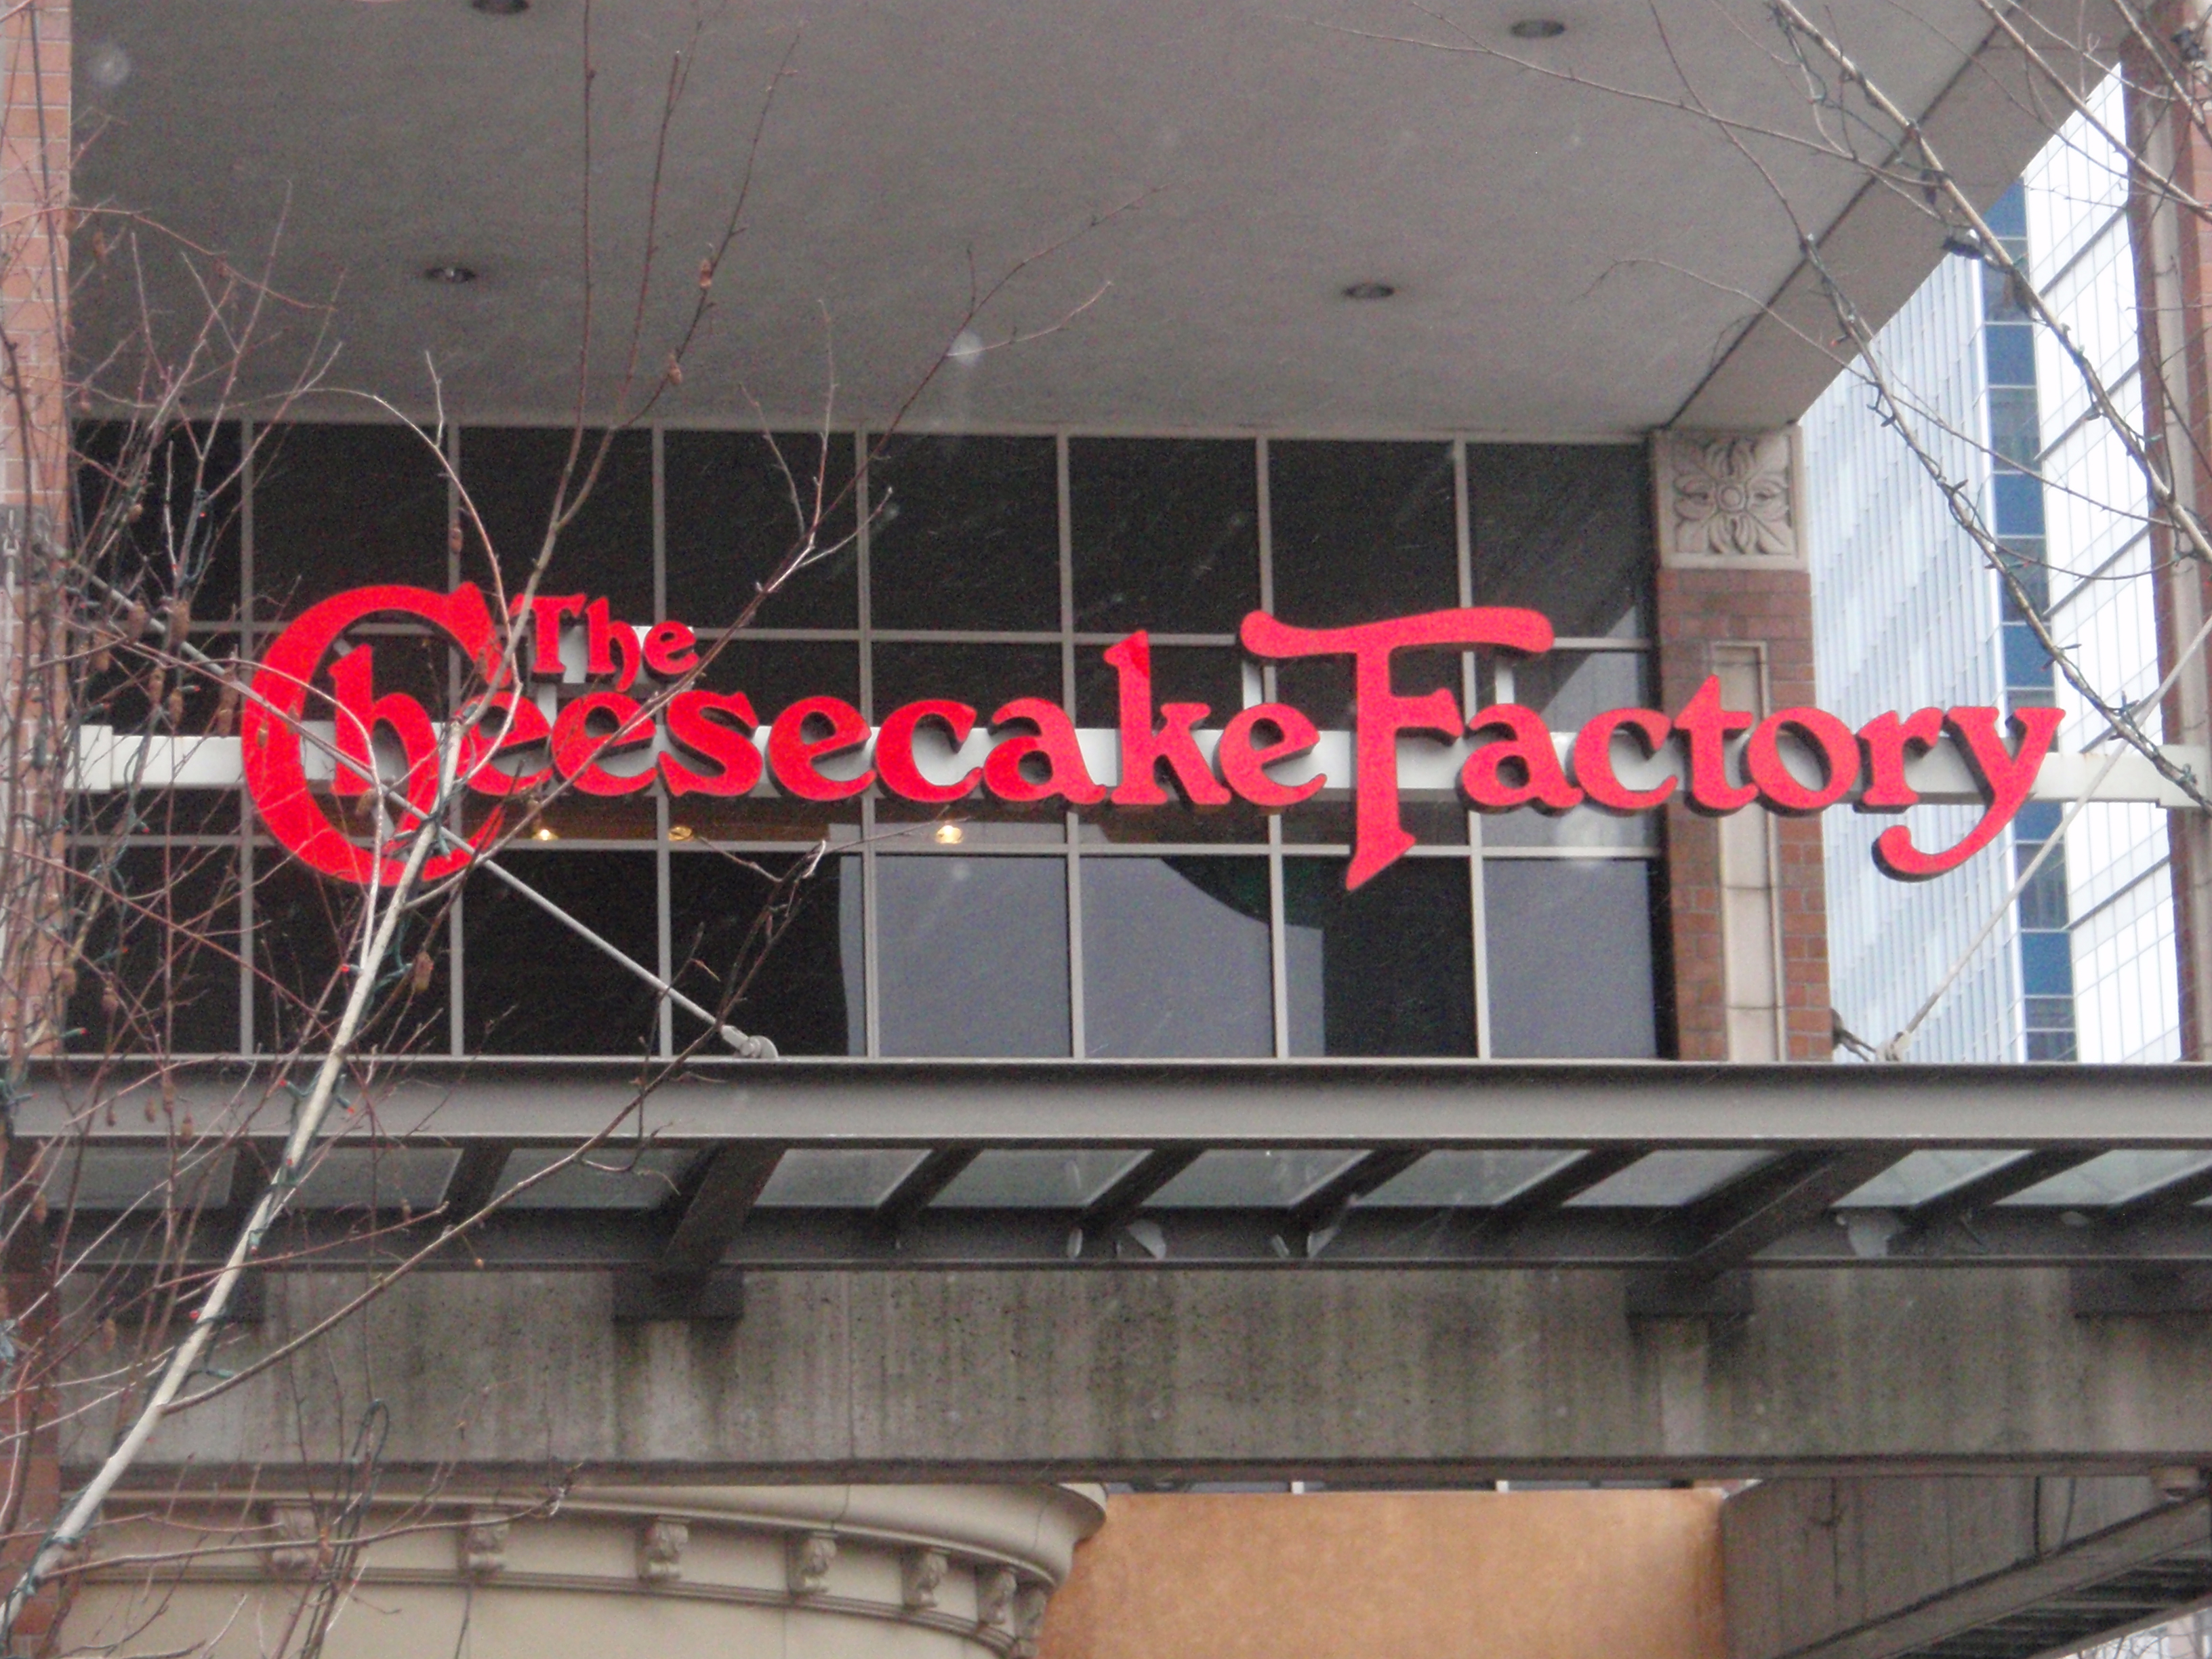 一张照片显示建筑物入口上方悬挂着一个大型芝士蛋糕工厂的标志。